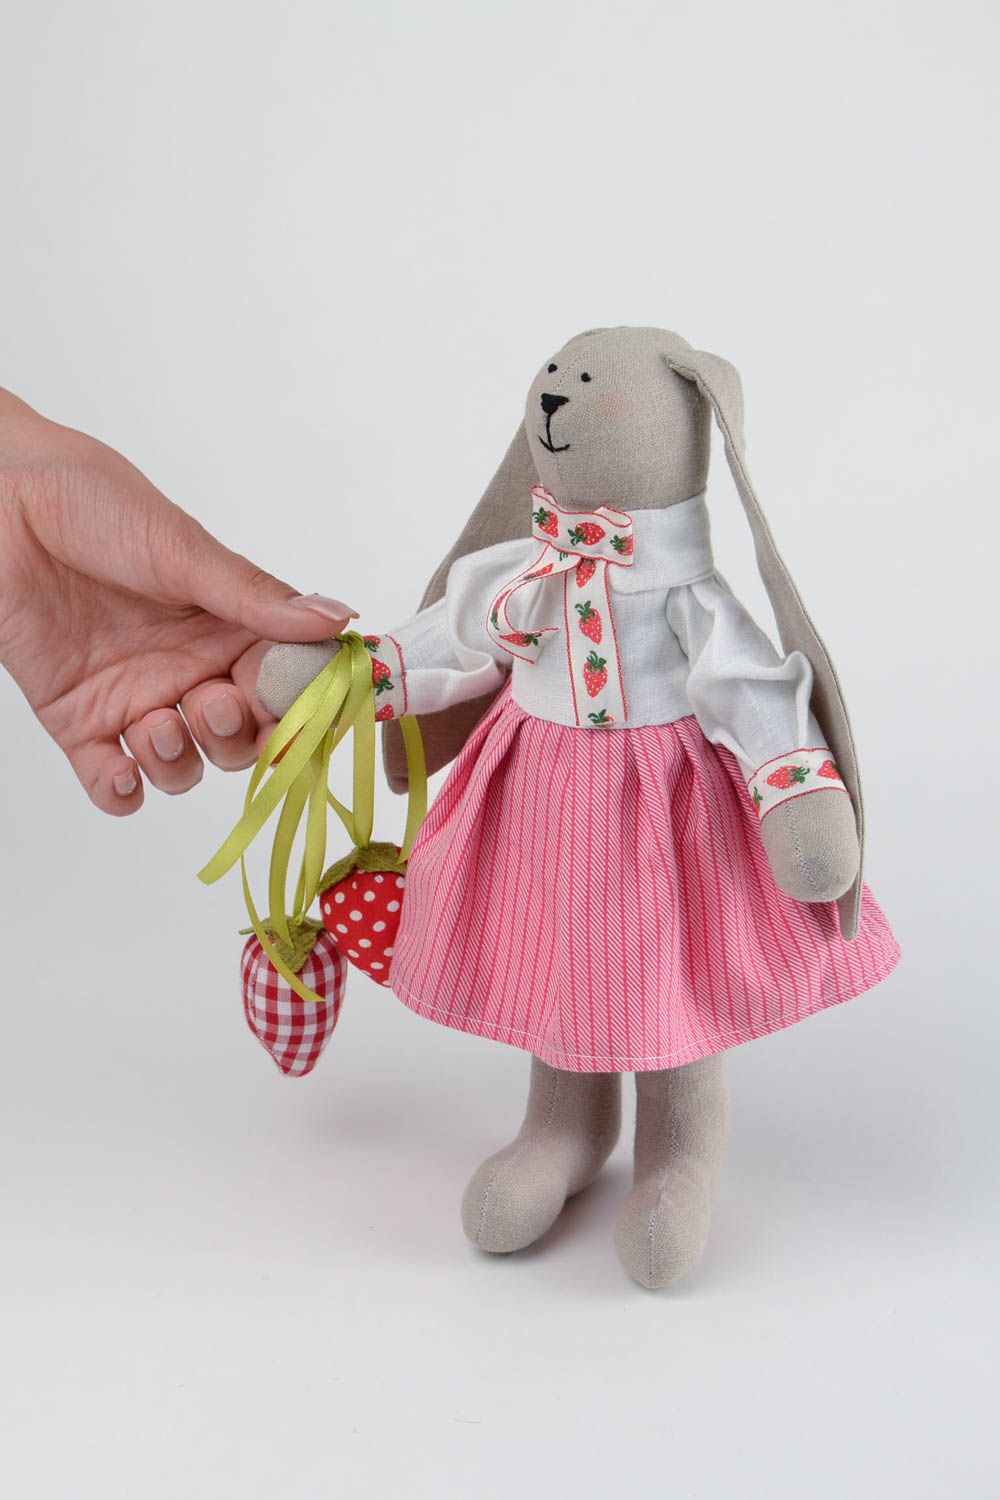 Авторская игрушка ручной работы игрушка заяц стильный подарок из хлопка фото 2